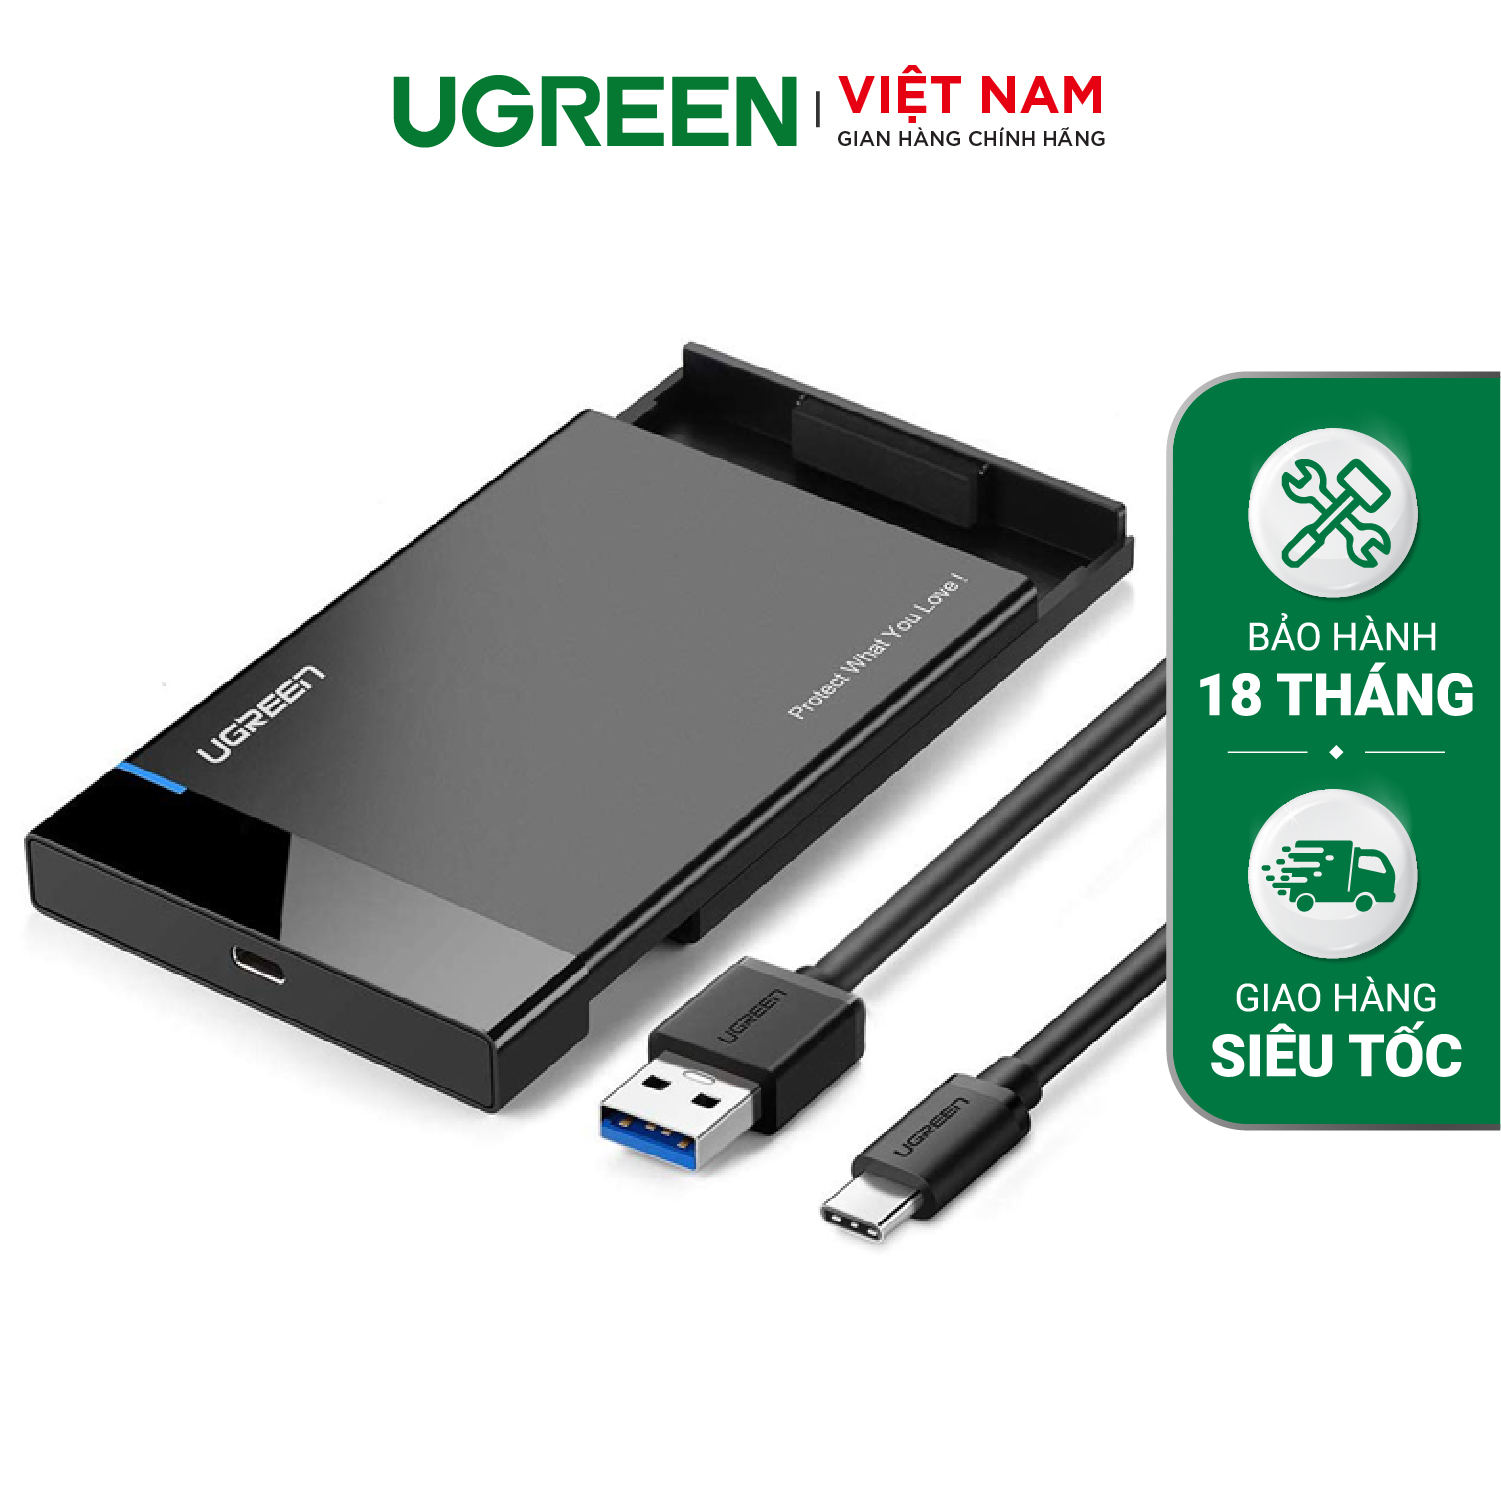 Hộp đựng ổ cứng UGREEN US221 Đựng ổ 2.5 inch SSD/HDD hỗ trợ lên đến 6TB vỏ nhựa ABS cao cấp (dây USB 3.0 gắn liền vỏ hộp) kích thước 128x82x14mm – Hàng phân phối chính hãng – Bảo hành 18 tháng 1 đổi 1